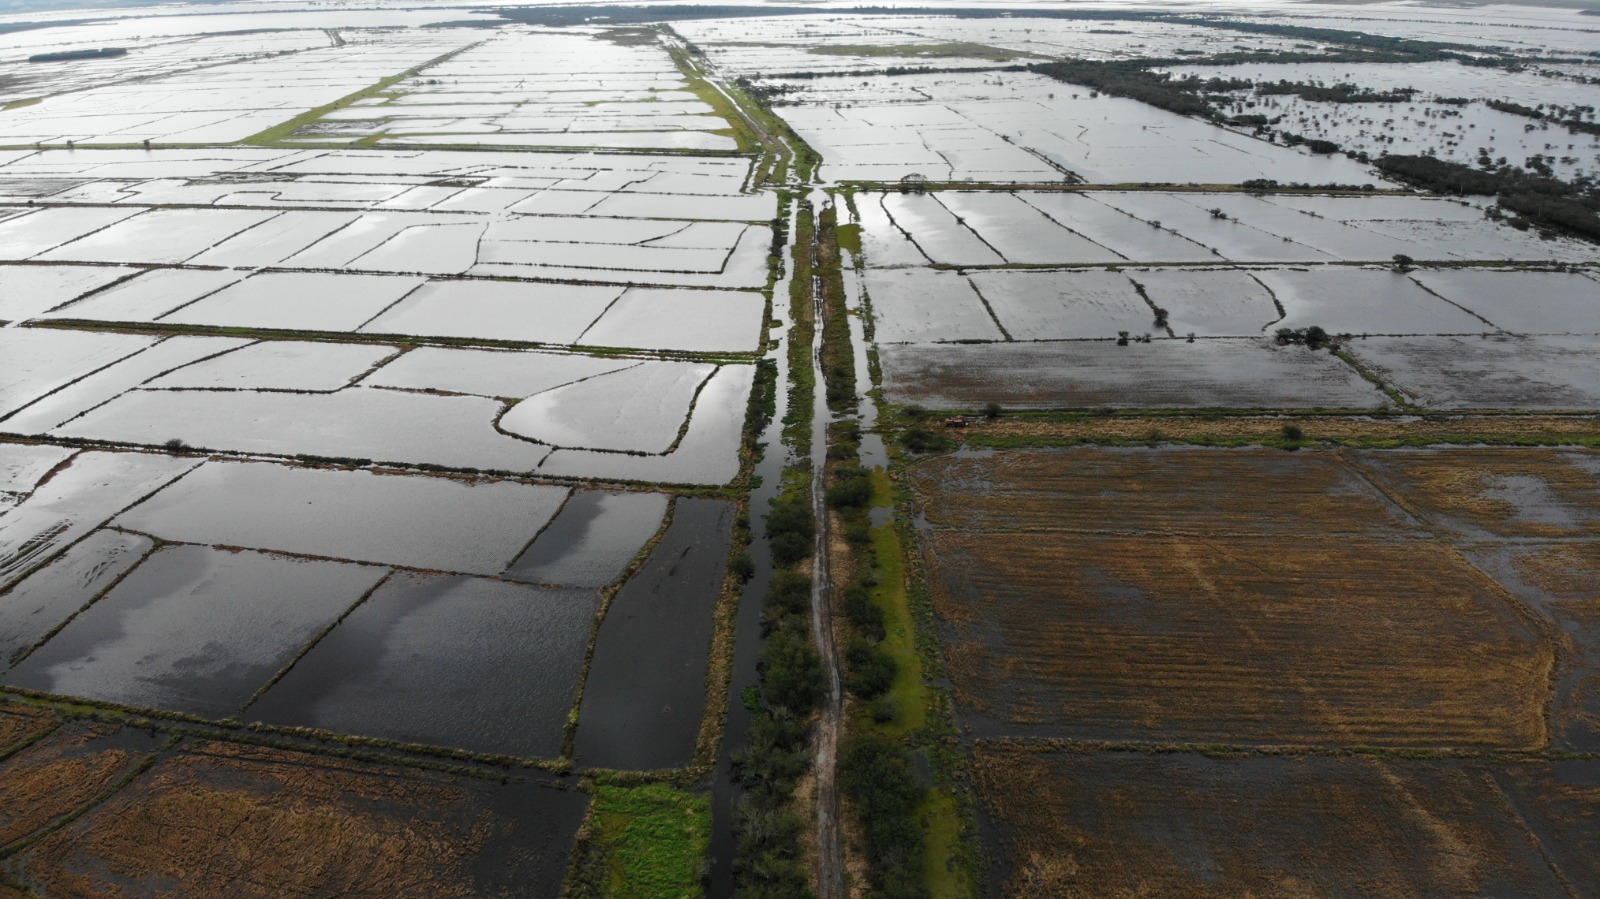 Lavoura de arroz de assentamento do MST alagada: modelo agroecológico como alternativa à monocultura que vem provocando desmatamento dos biomas e assoreamento dos rios (Foto: Divulgação / MST)